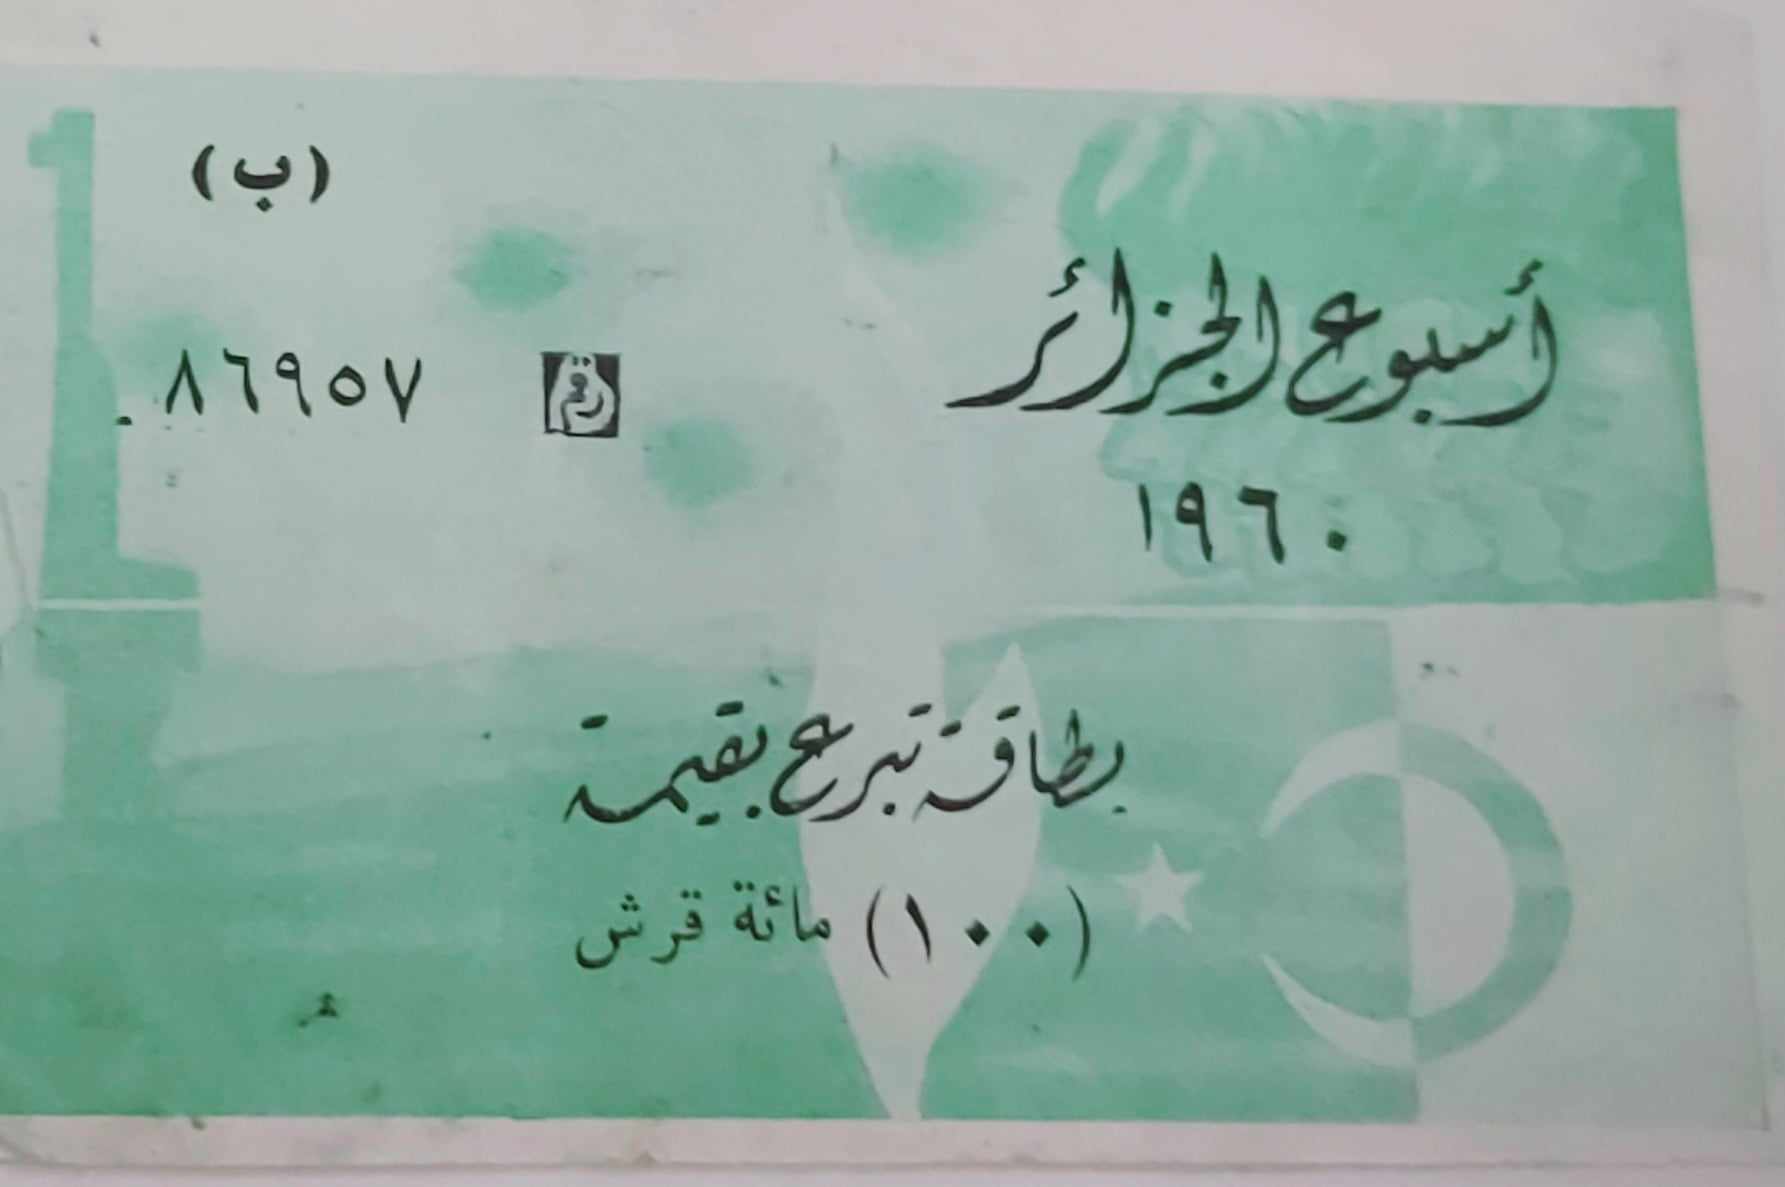 التاريخ السوري المعاصر - بطاقة تبرع بقيمة 100 قرش سوري في أسبوع الجزائر عام 1960